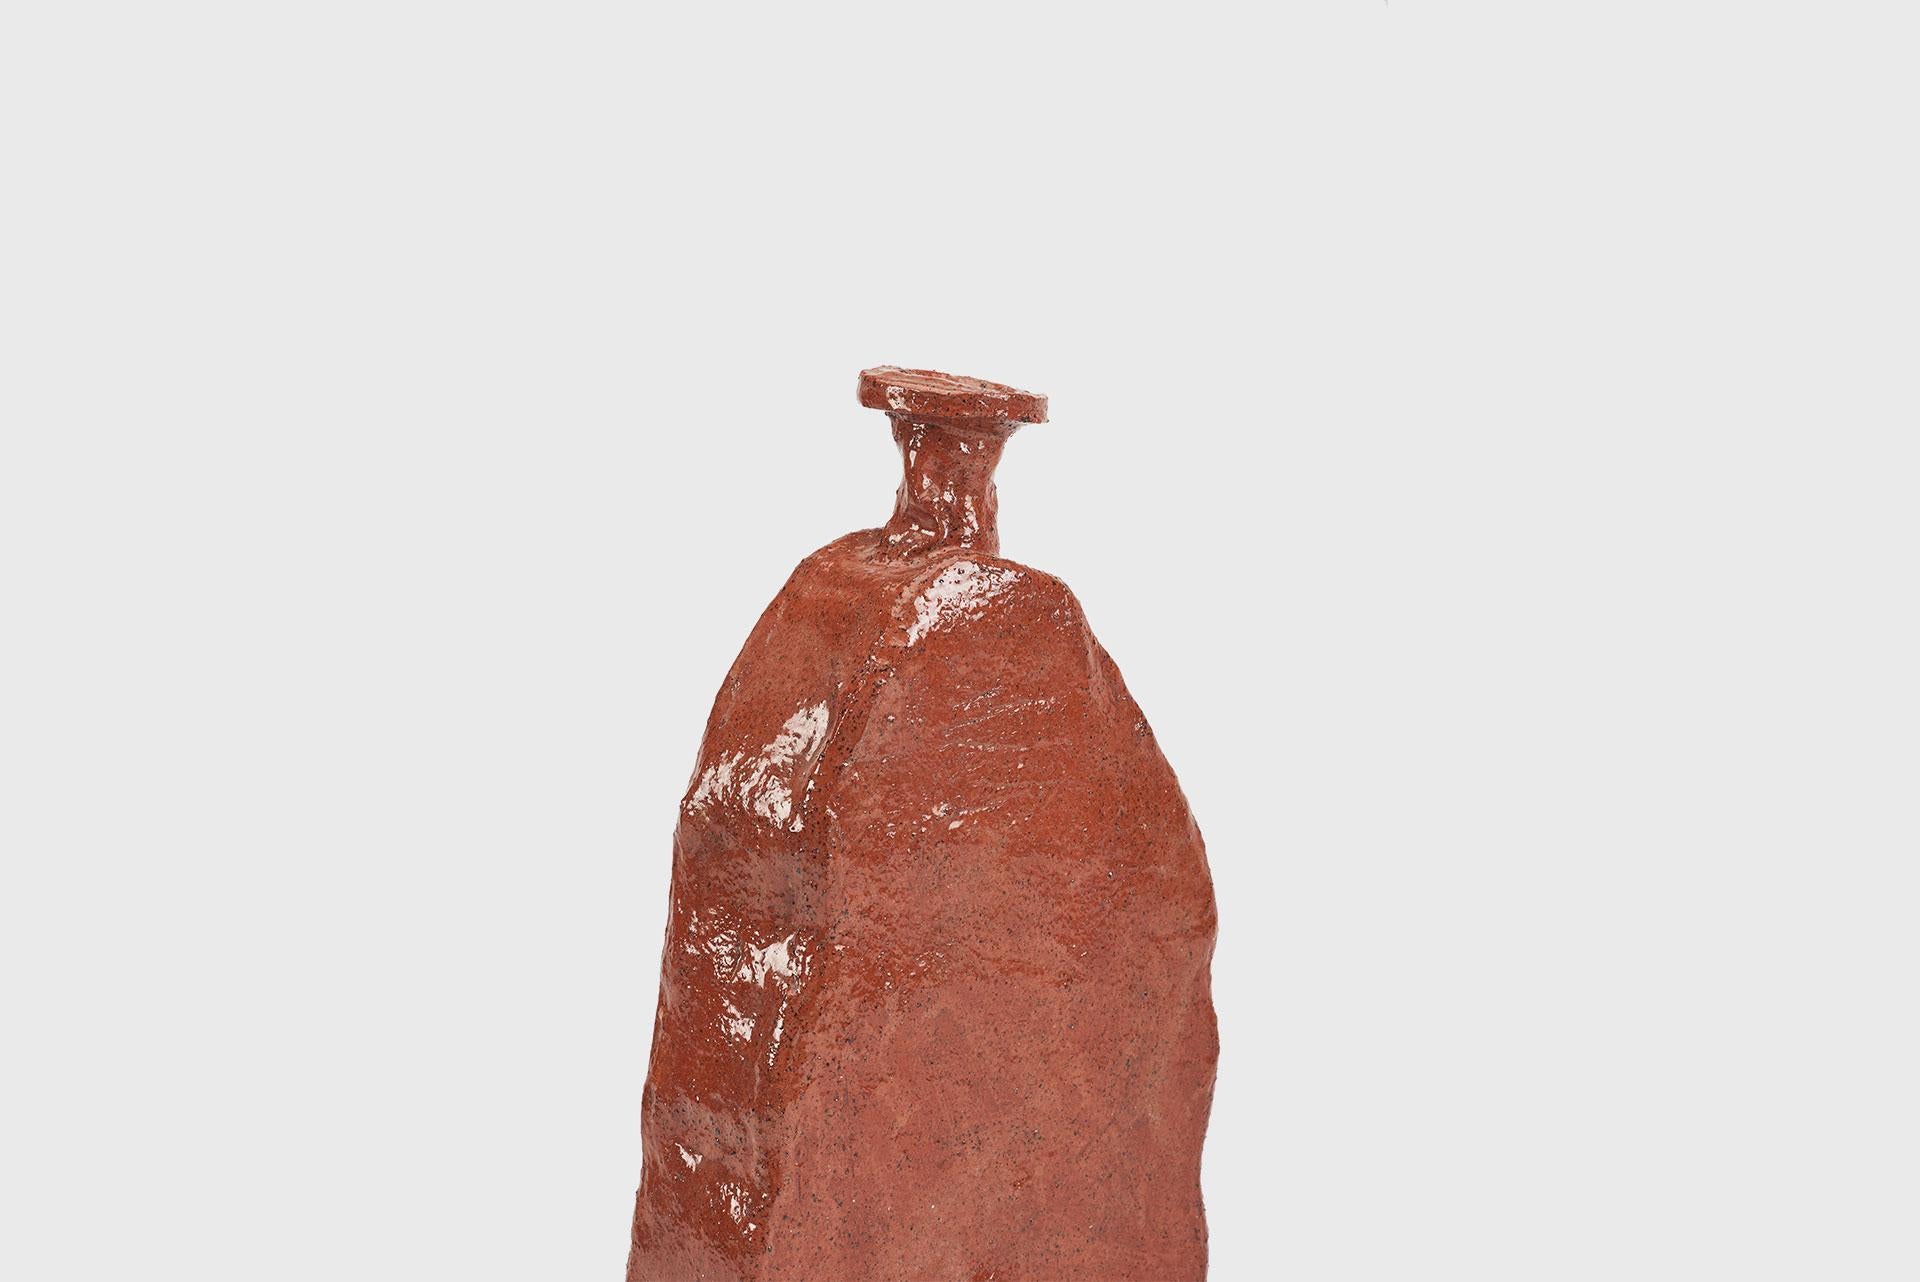 Ceramic vase model “Aloi”
From the series 